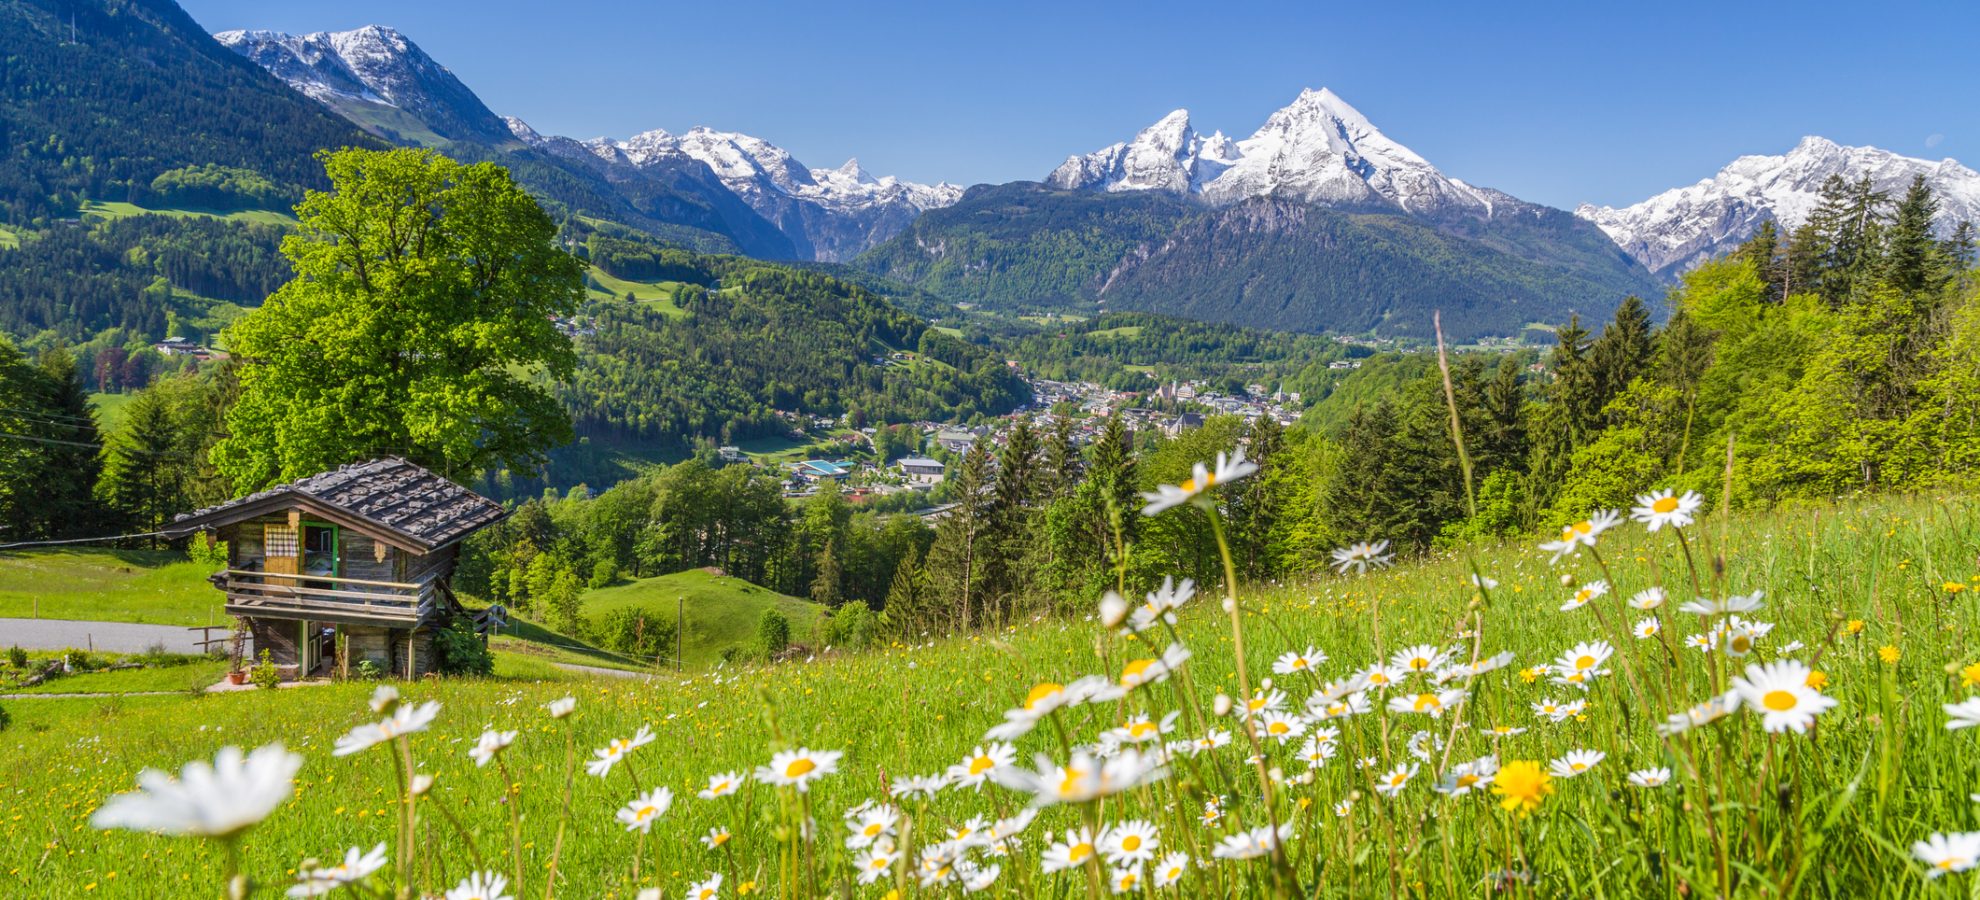 Zwitserland Alpine landschap met houten chalet in de zomer